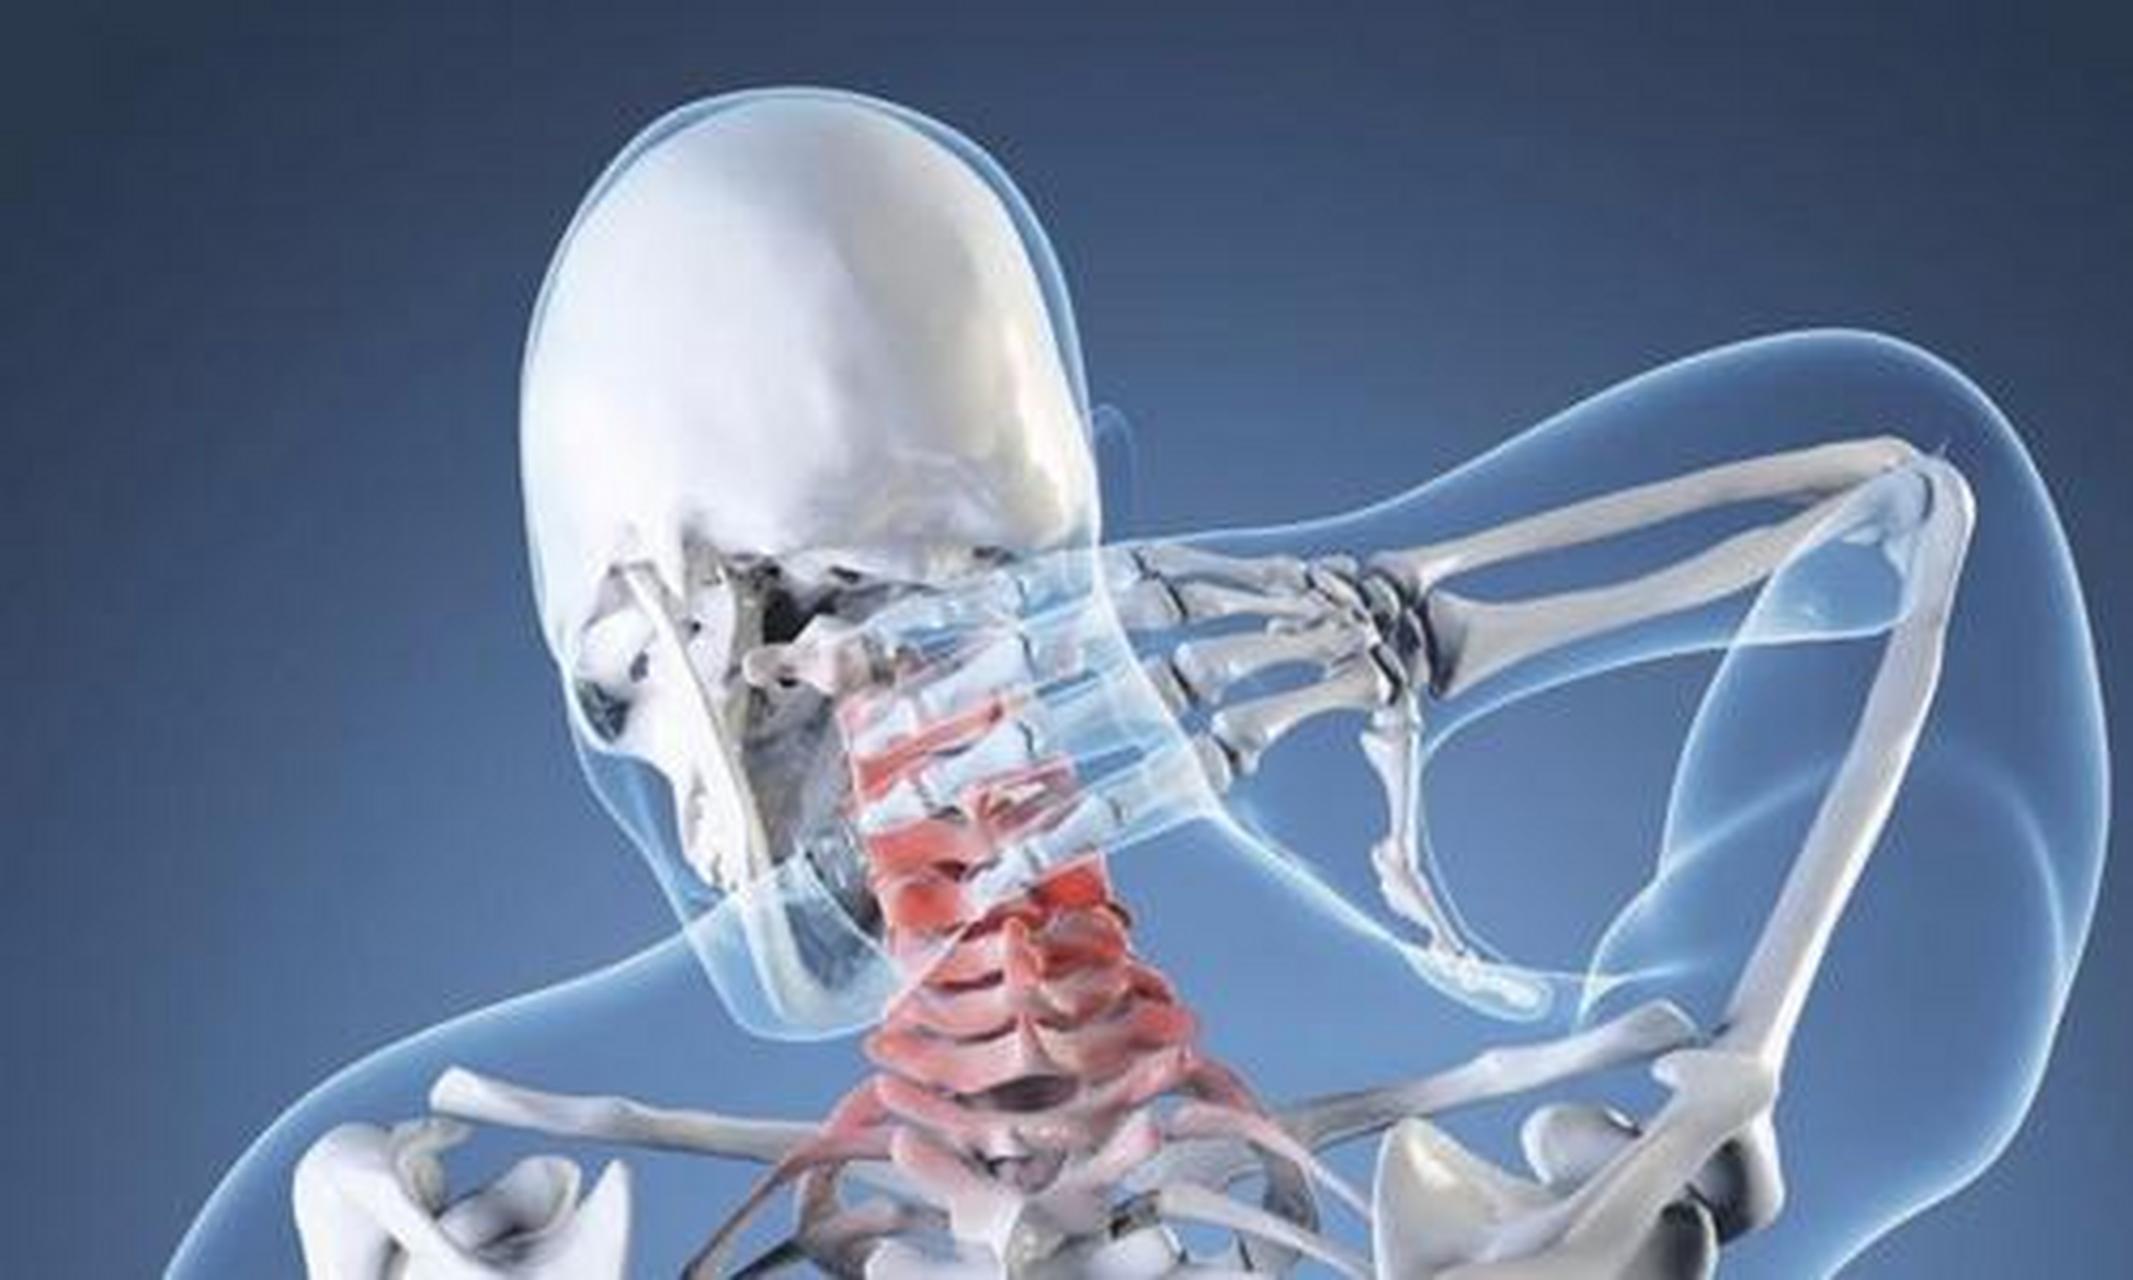 颈型颈椎病  颈项强直,疼痛,可有整个肩背疼痛发僵,不能作点头,仰头